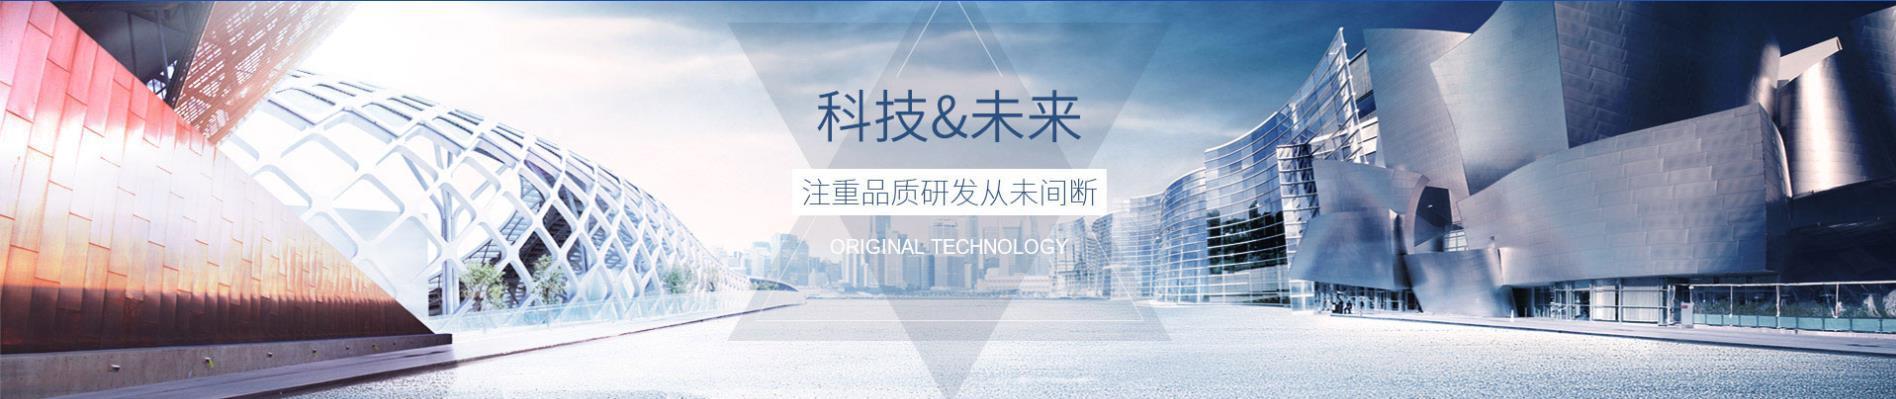 高士達注(zhu)重產品研發,科技未來